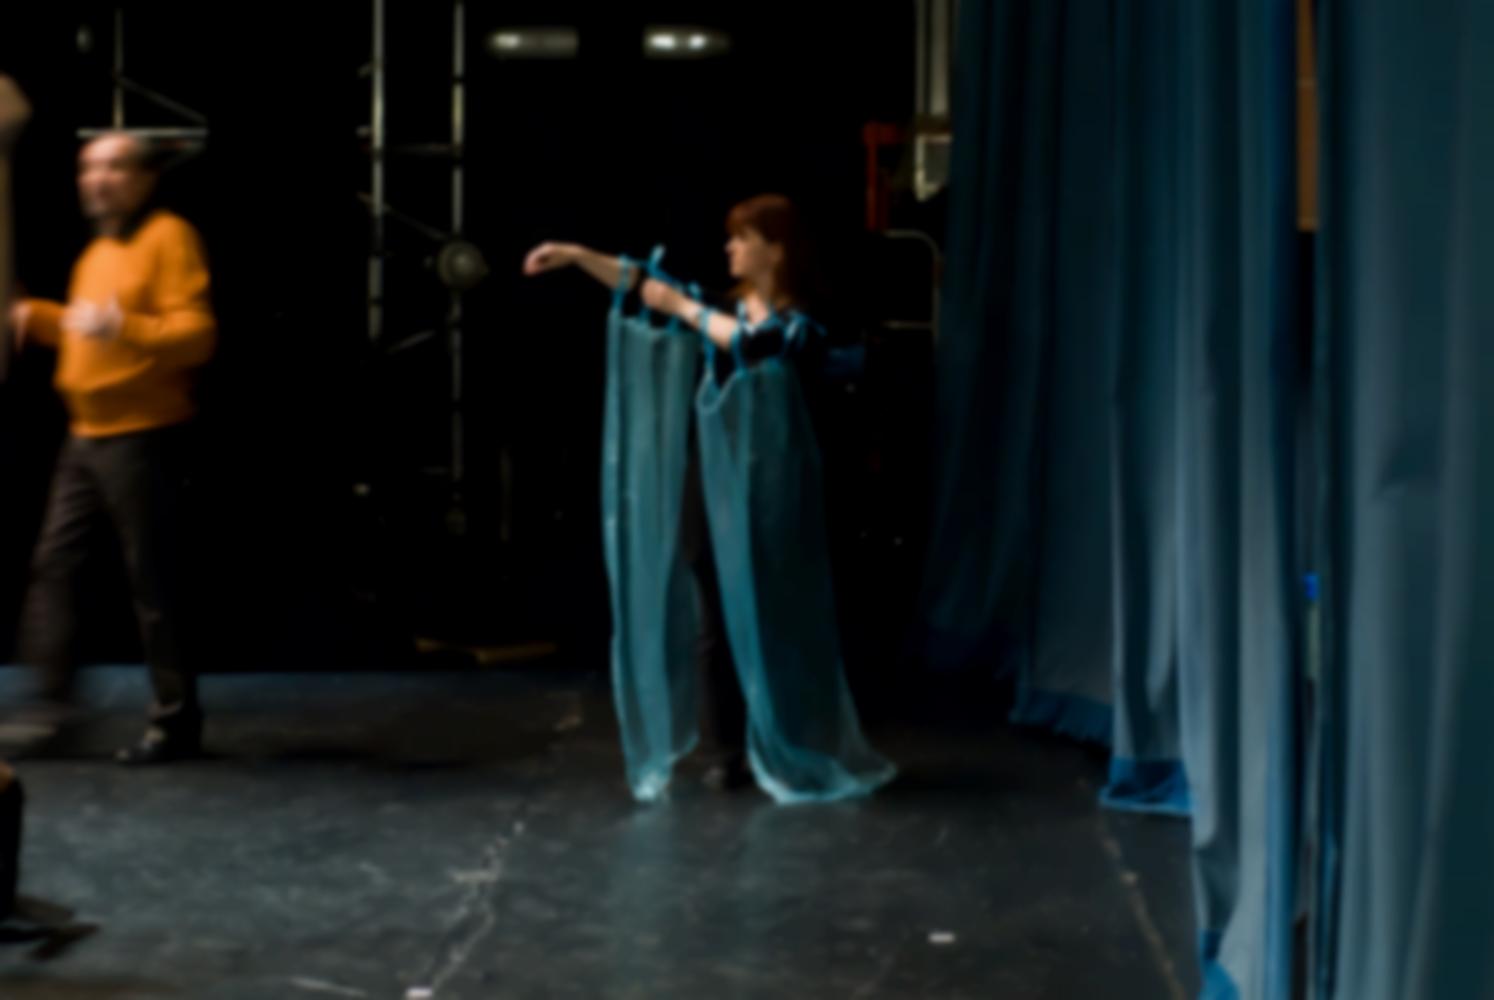 La scène avant la représentation, les rideaux sont fermés, une comédienne arrange deux voiles bleus attachés à ses bras par des rubans, près d'un comédien en pull-over orange. Nanterre, octobre 2009.